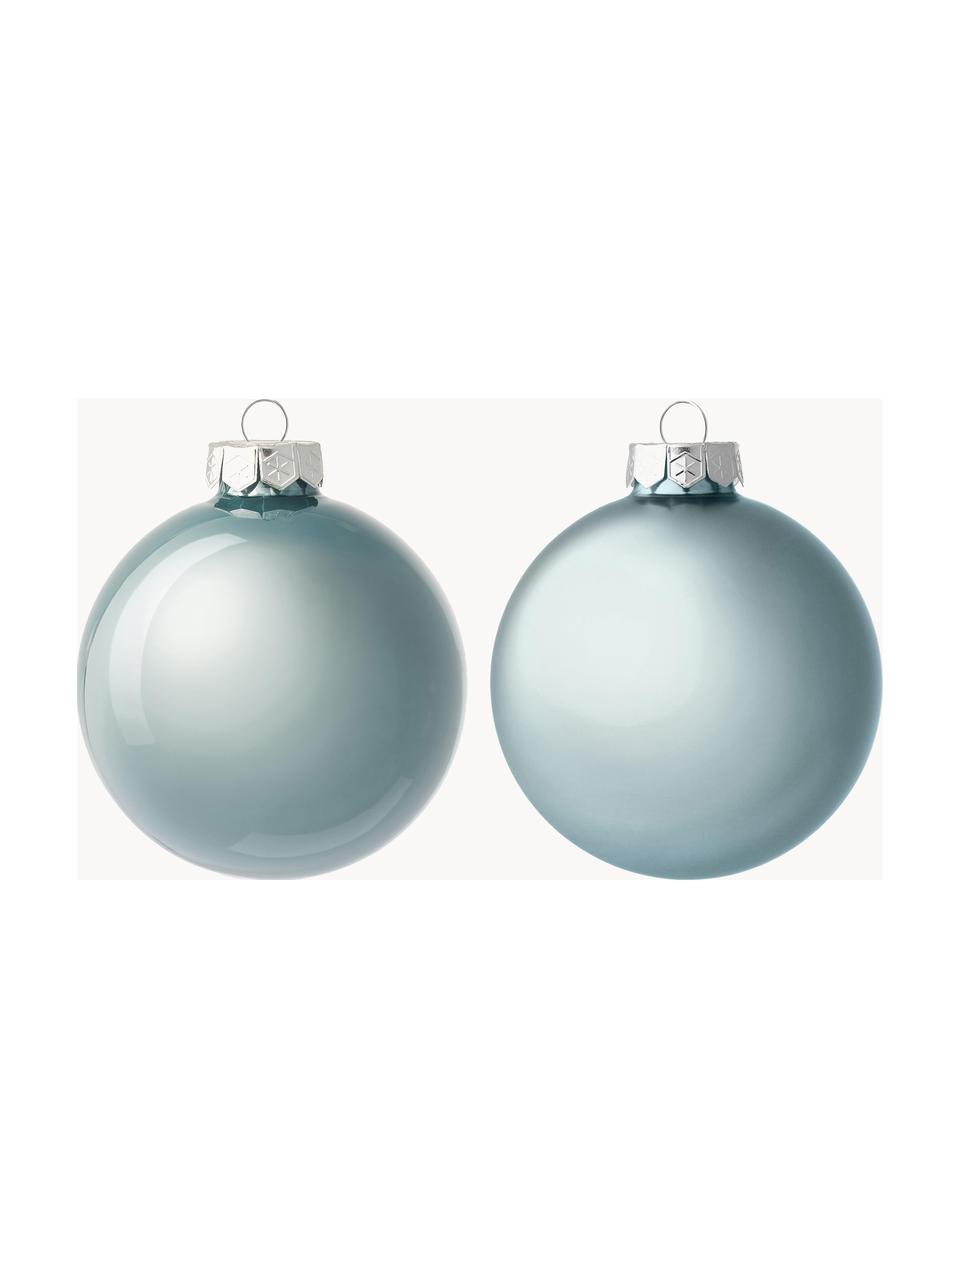 Sada vánočních ozdob Evergreen, 16 dílů, Světle modrá, Ø 4 cm, V 4 cm